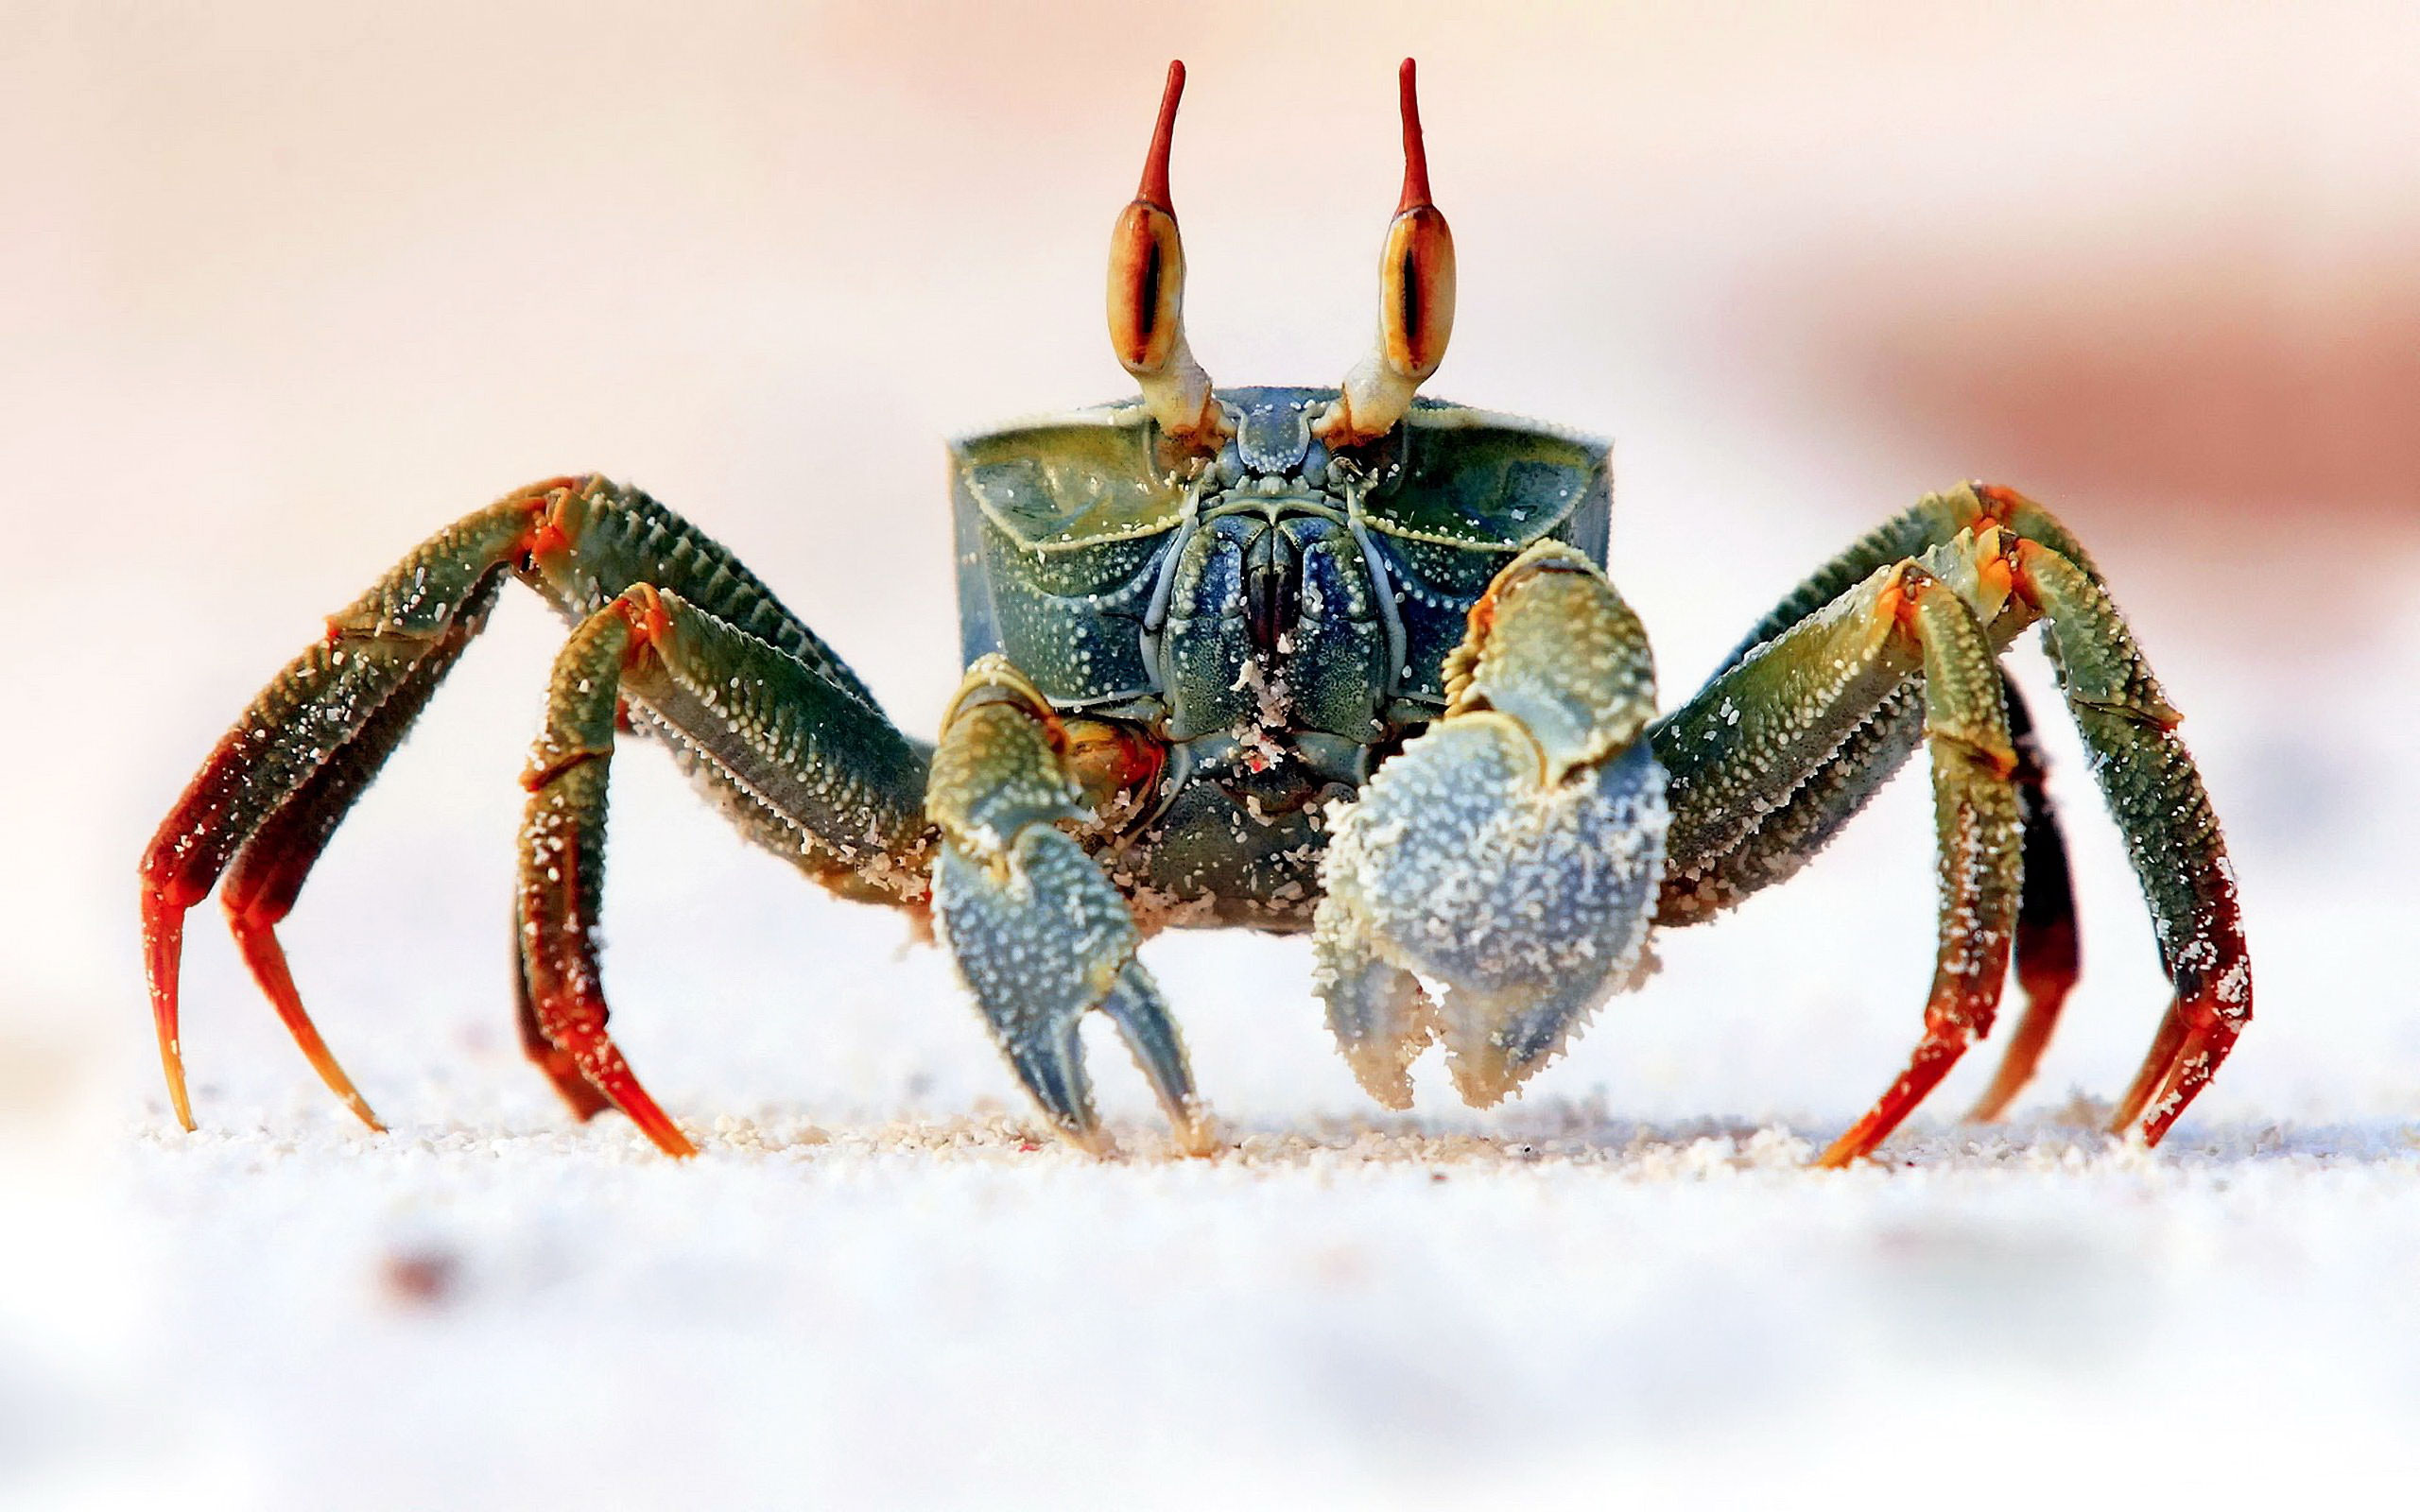 Wallpapers animal Bing crab on the desktop